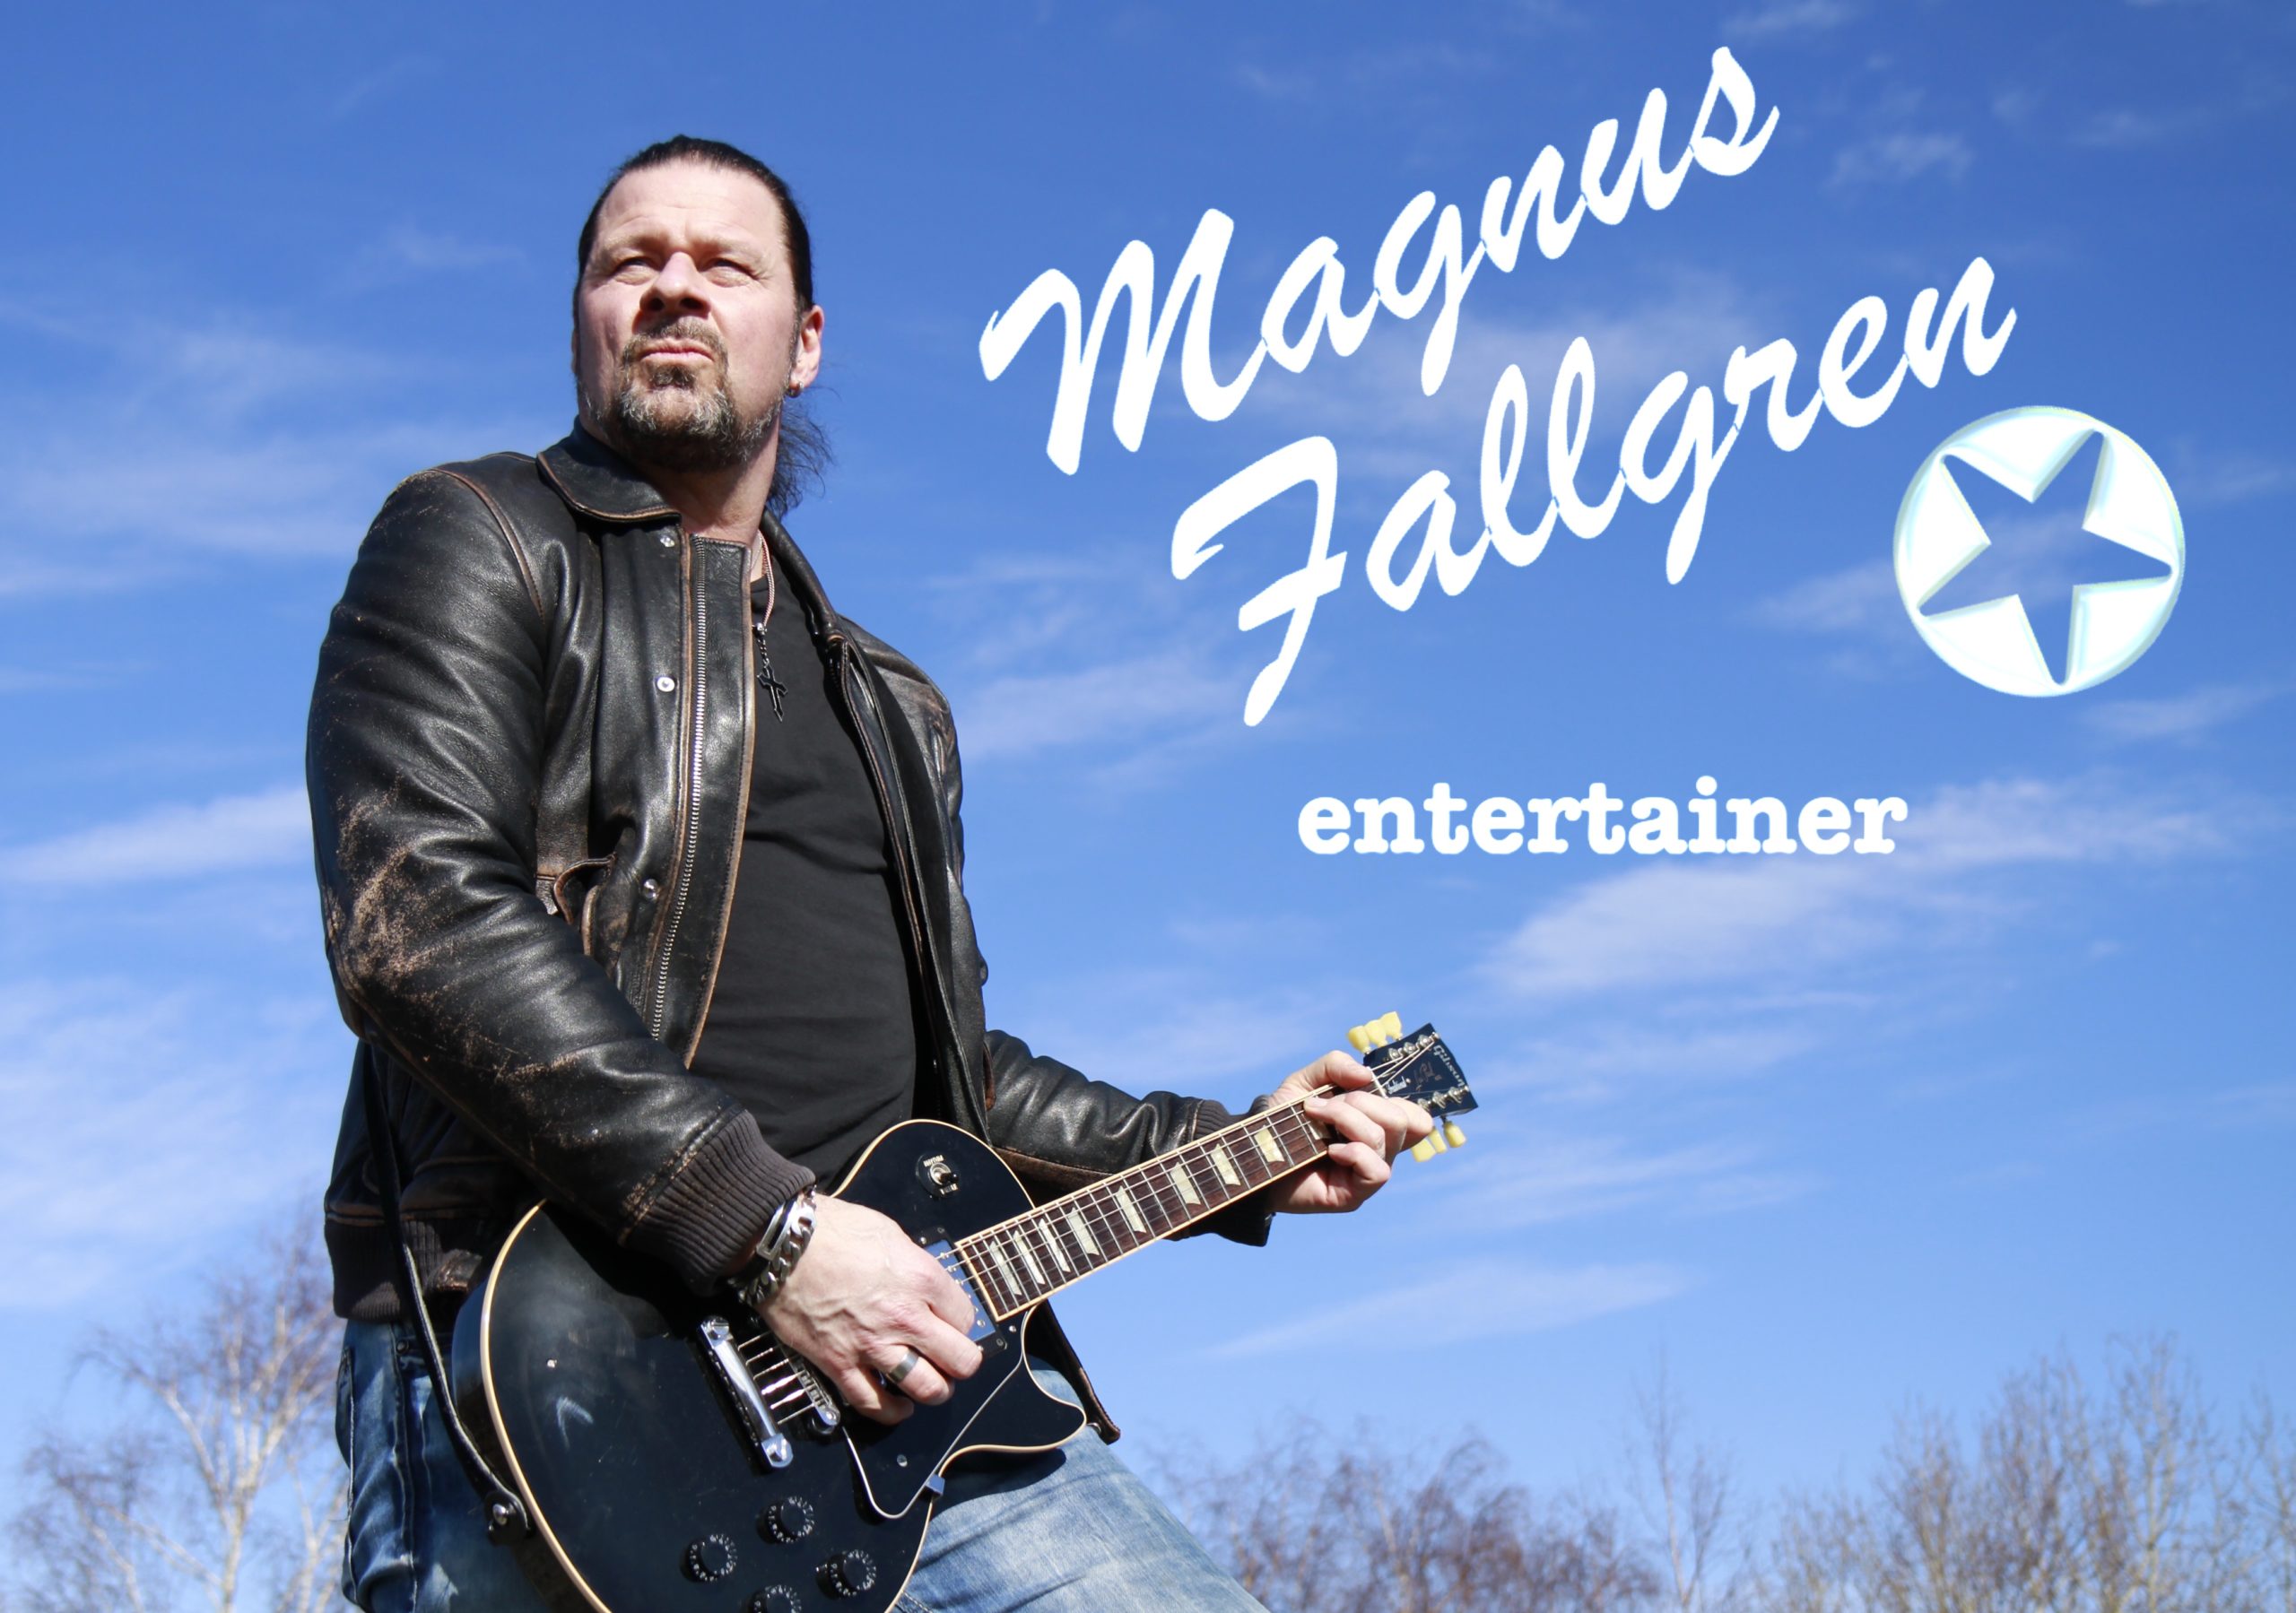 MagnusFallgren trubadur enmansband 2 scaled - Brass Deluxe är ett tremanna blåsband som spelar glad balkanmusik som passar på event, konserter, prisutdelningar, tillsammans med DJ:s och på fester.